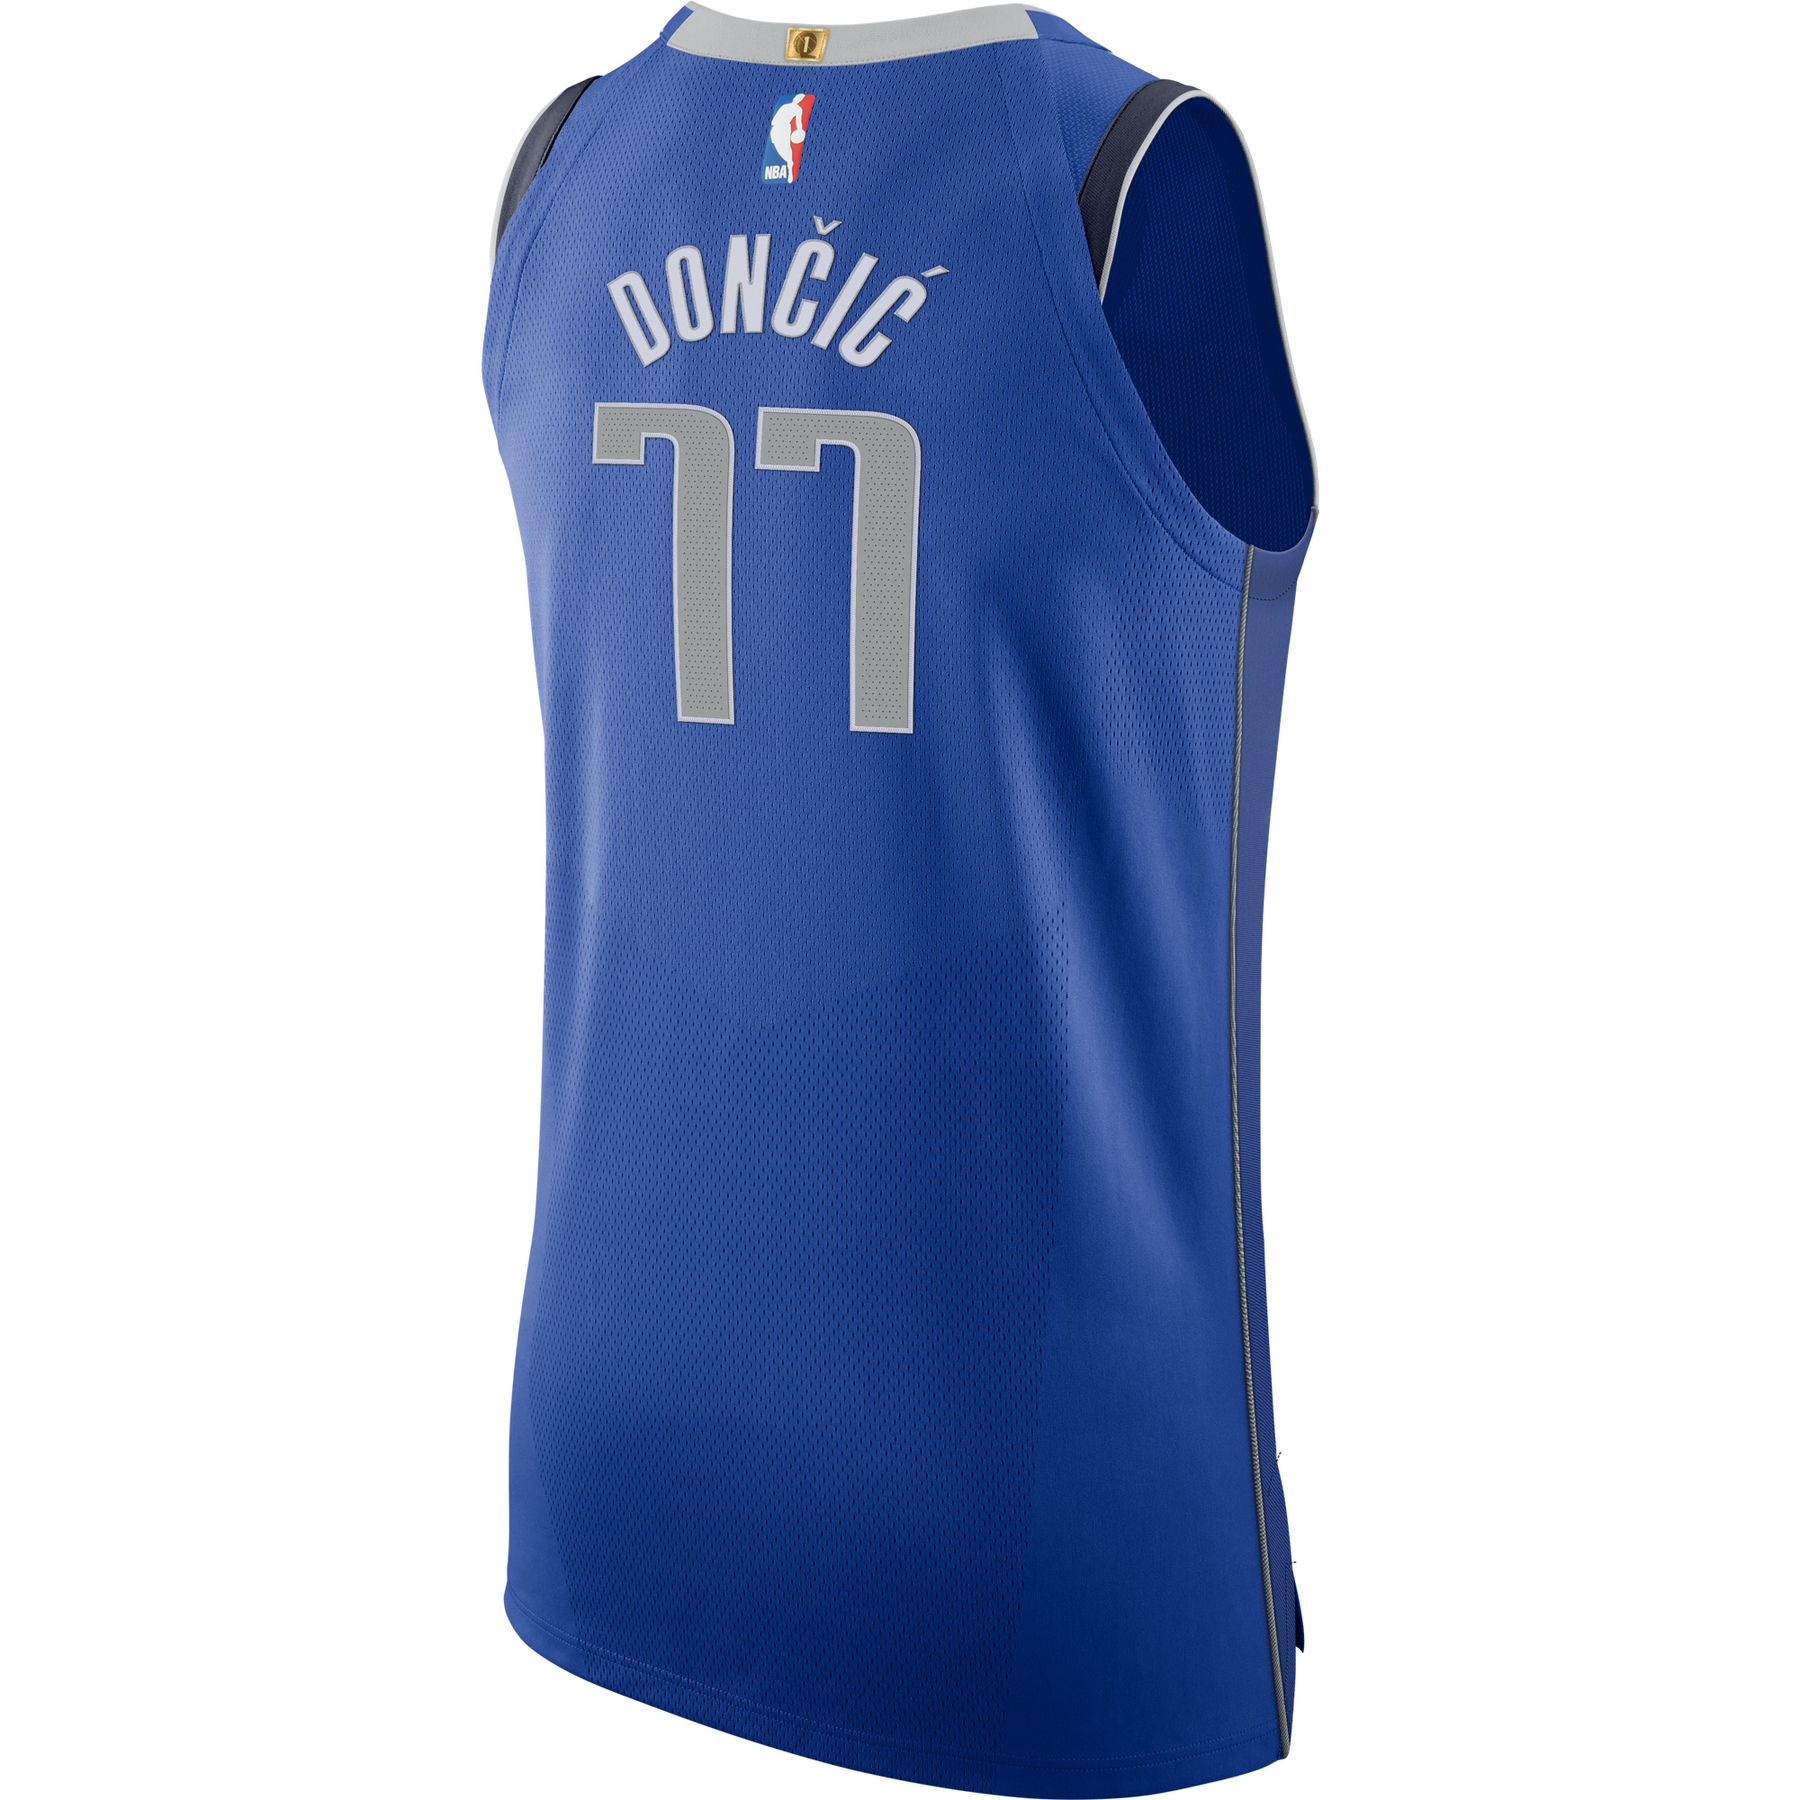 Dallas MAVERICKS Nike NBA jersey by SOTO UD